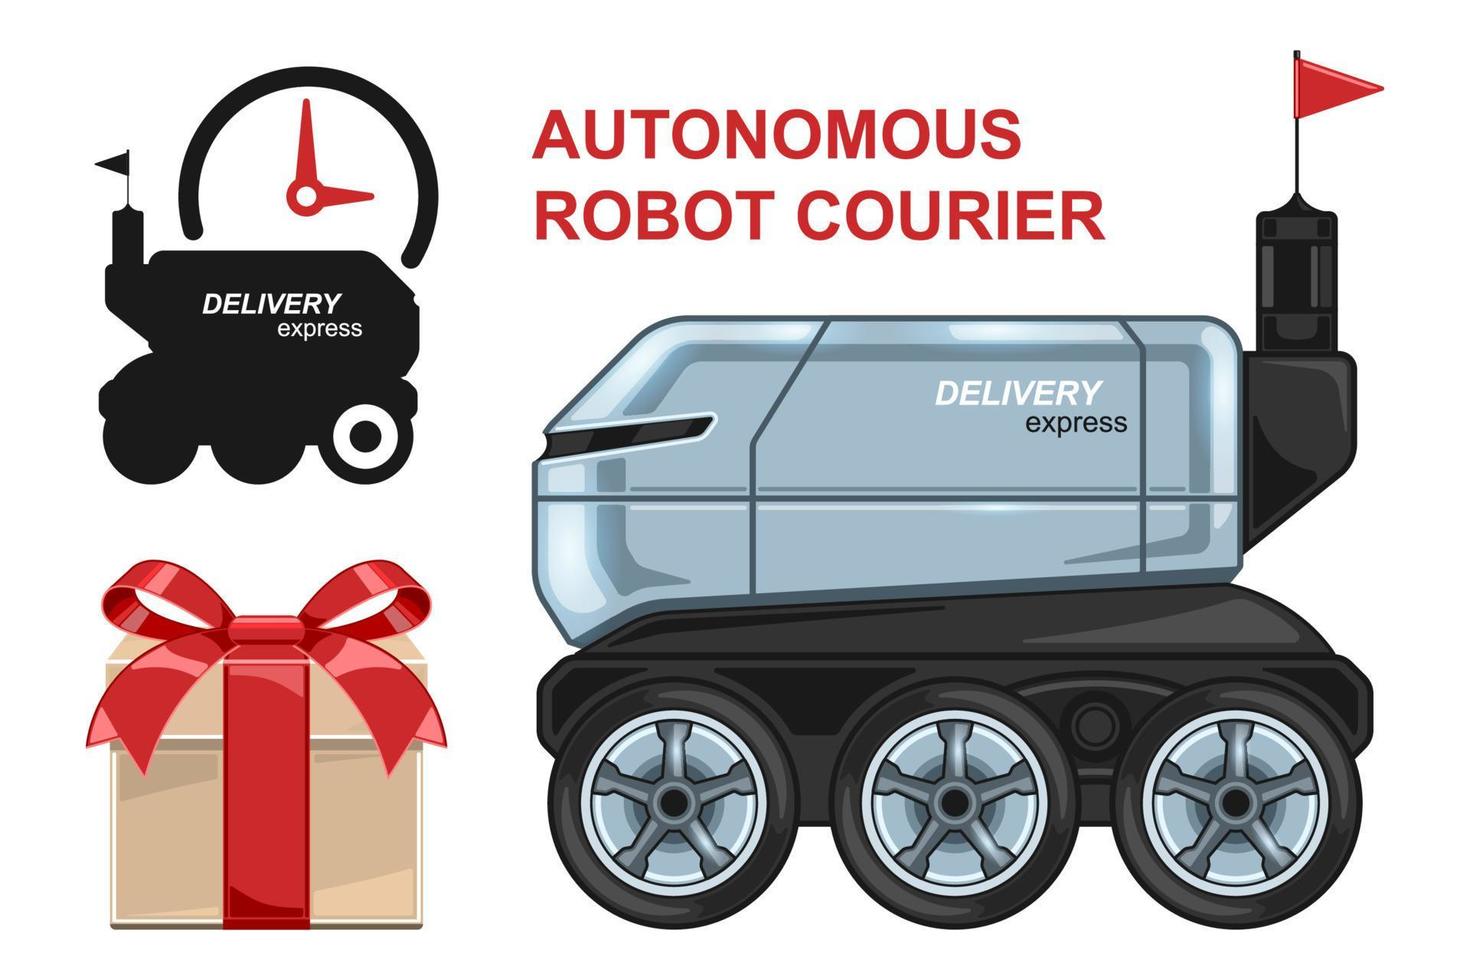 livraison de courrier robot autonome dessin animé réaliste isolé vecteur